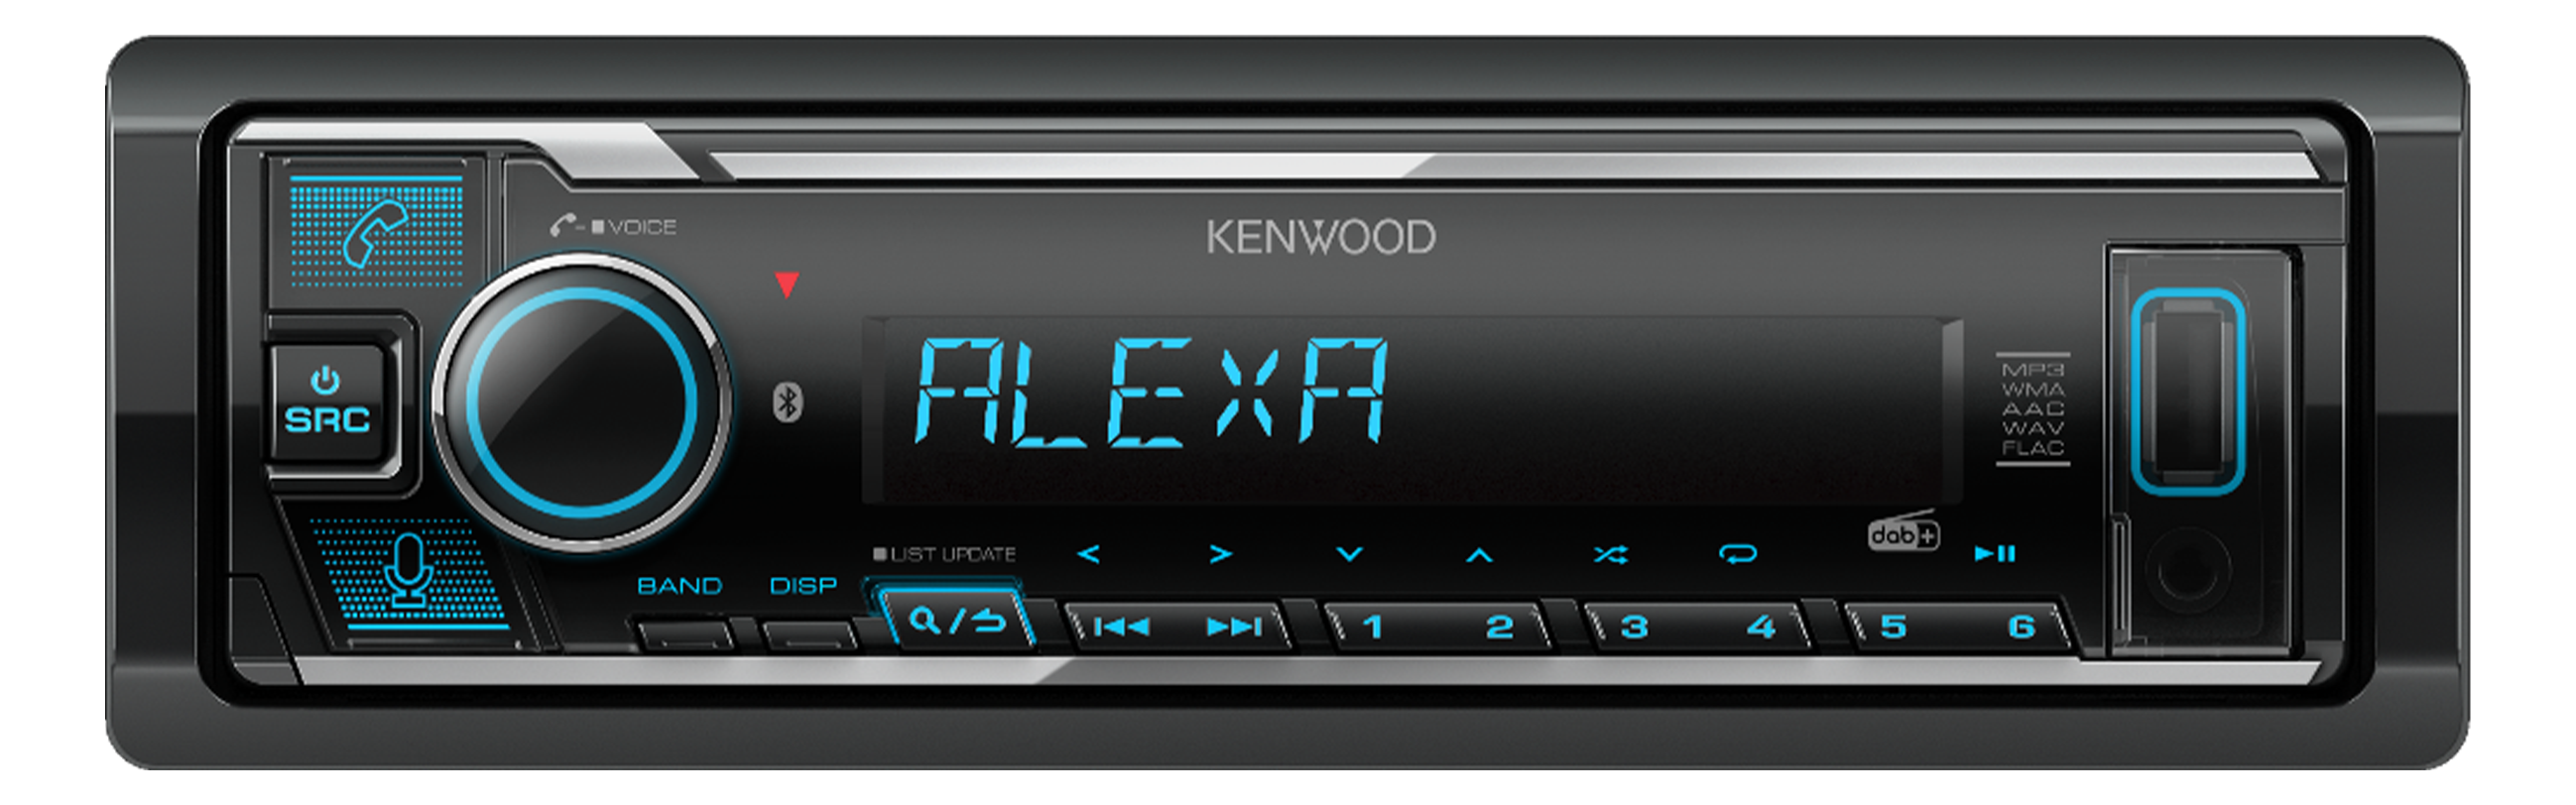 Kenwood KMR-M508DAB Autoradio port pour commande au volant, kit